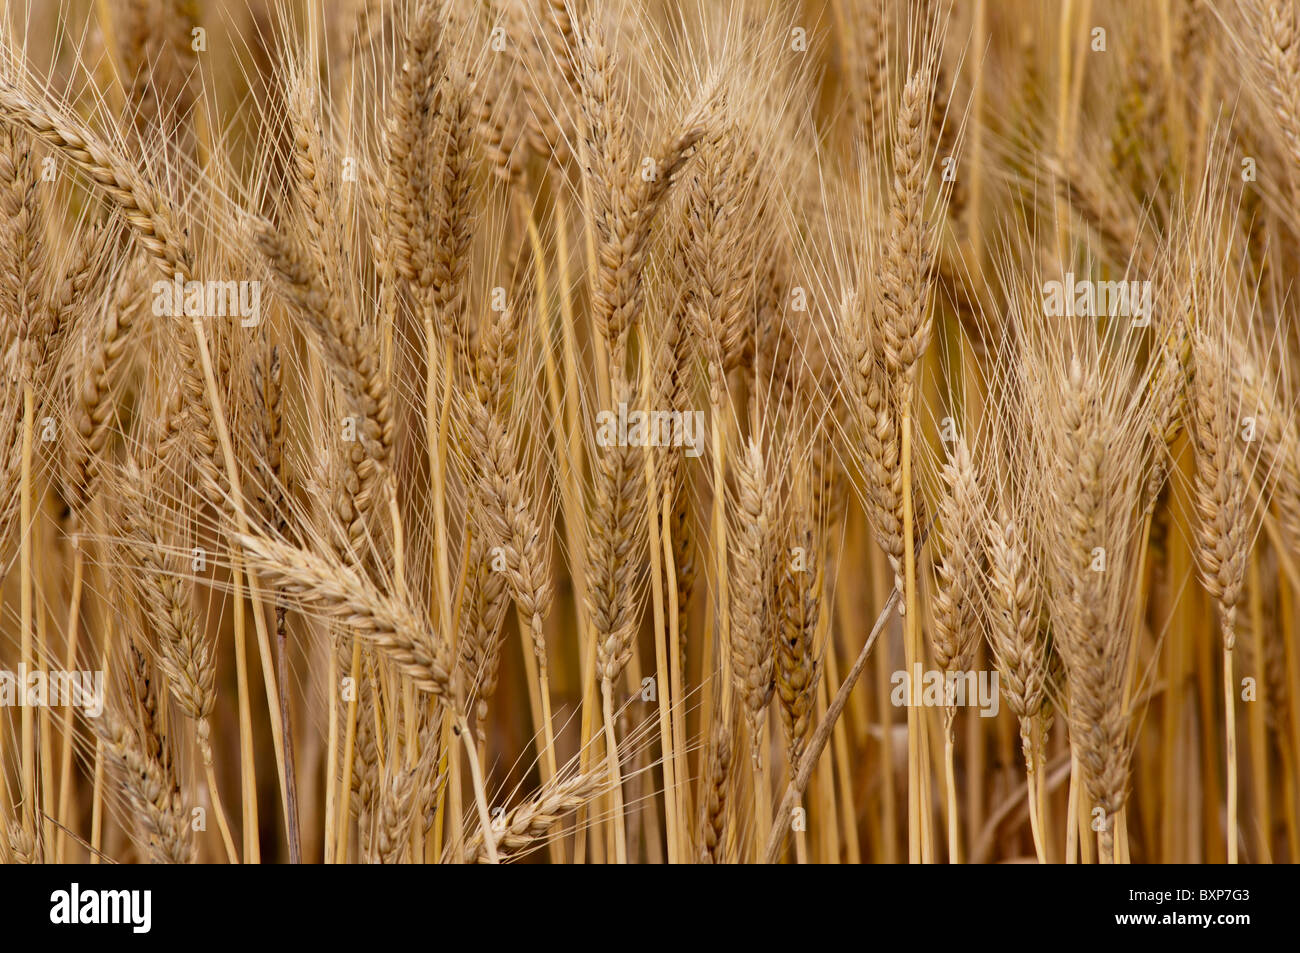 Ripening wheat Stock Photo